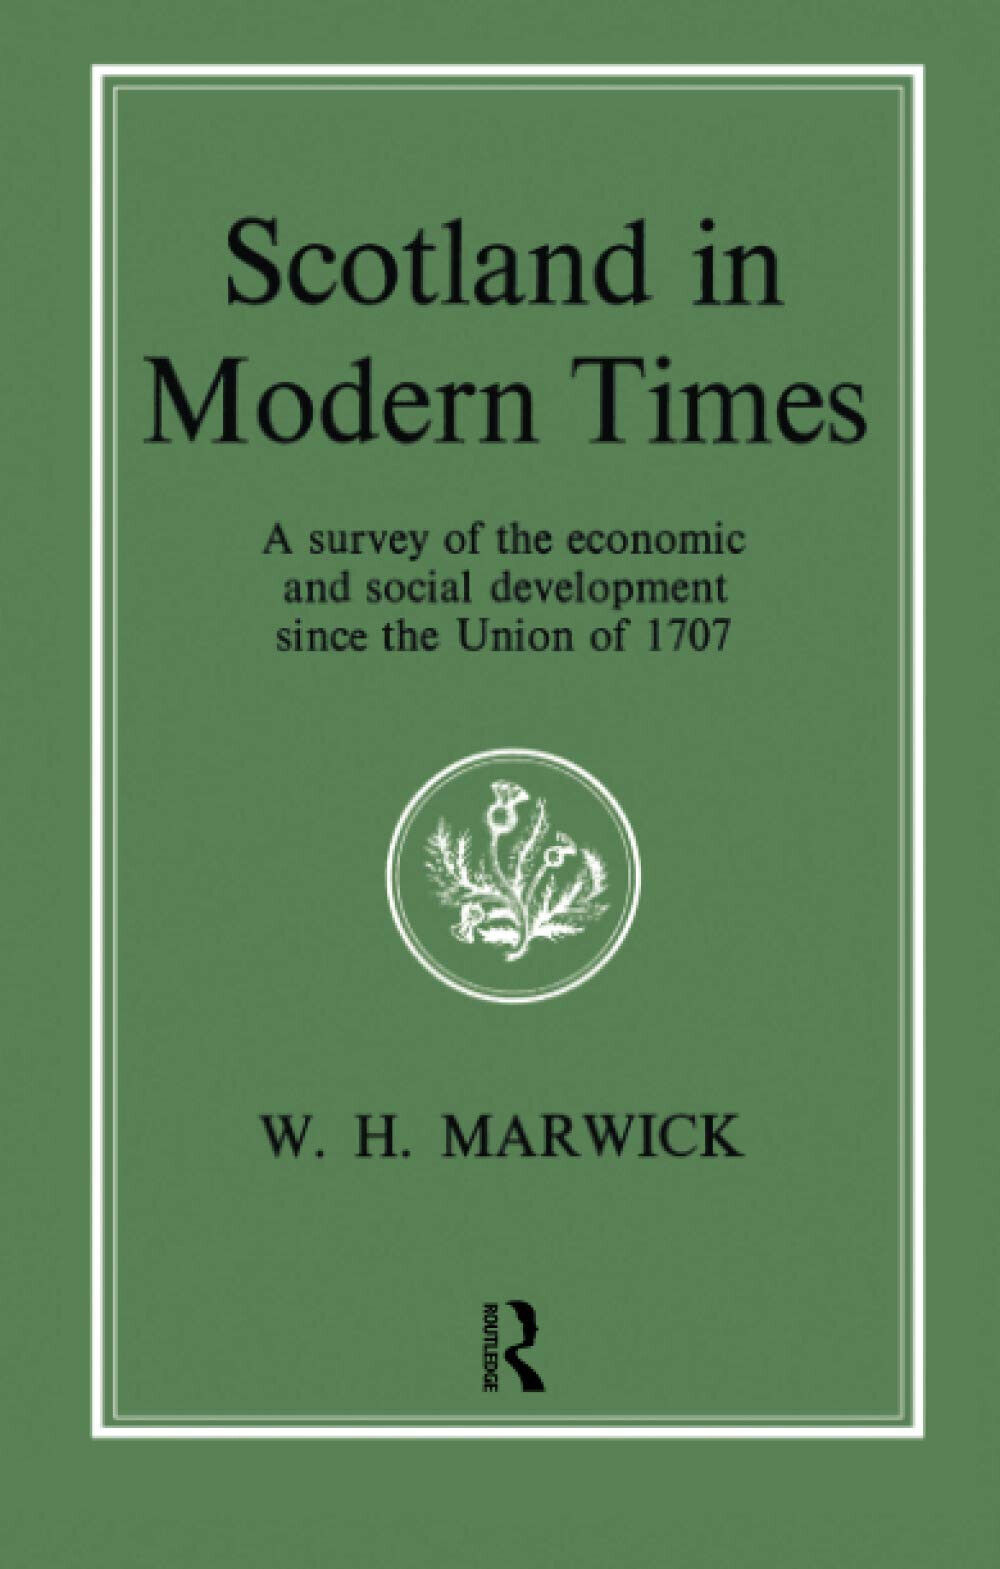 Scotland in Modern Times - William H. Marwick - Routledge, 2016 libro usato